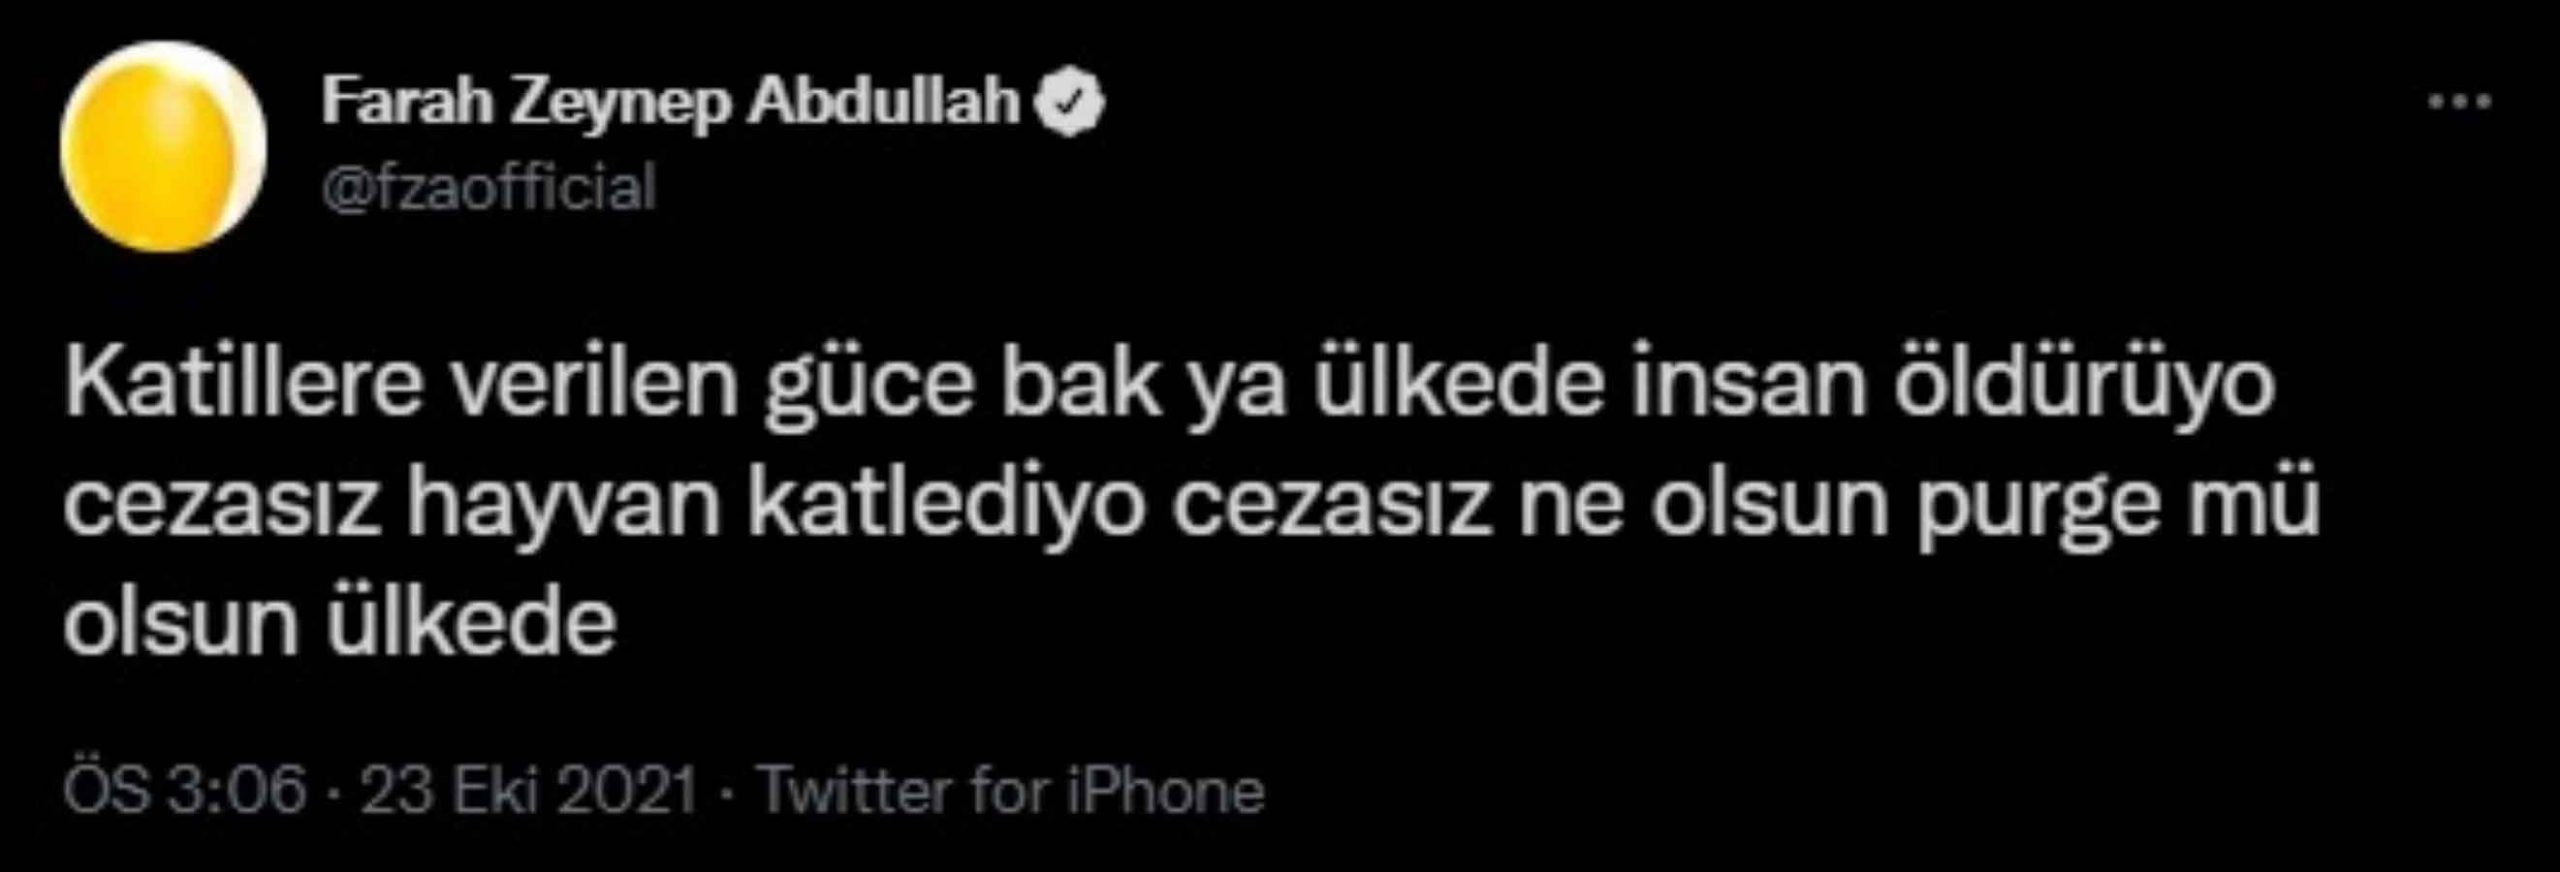 Farah Zeynep Abdullah'tan sosyal medyadaki görüntülere sert tepki: "Katillere verilen güce bak!"